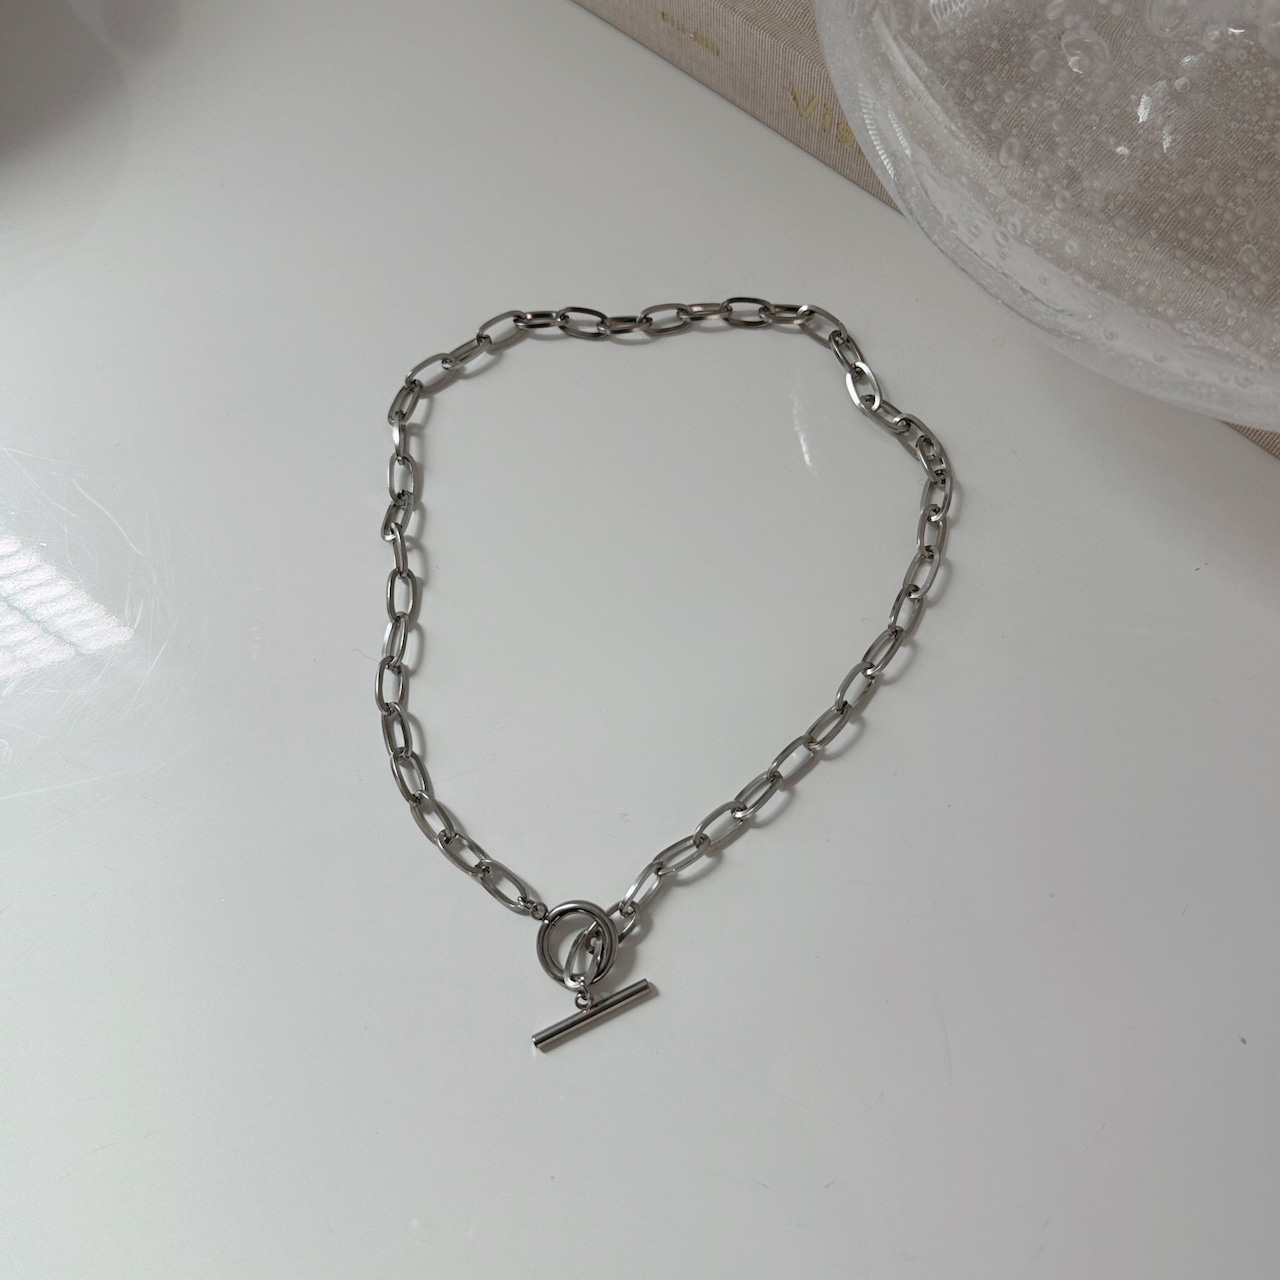 chain design necklace/silver